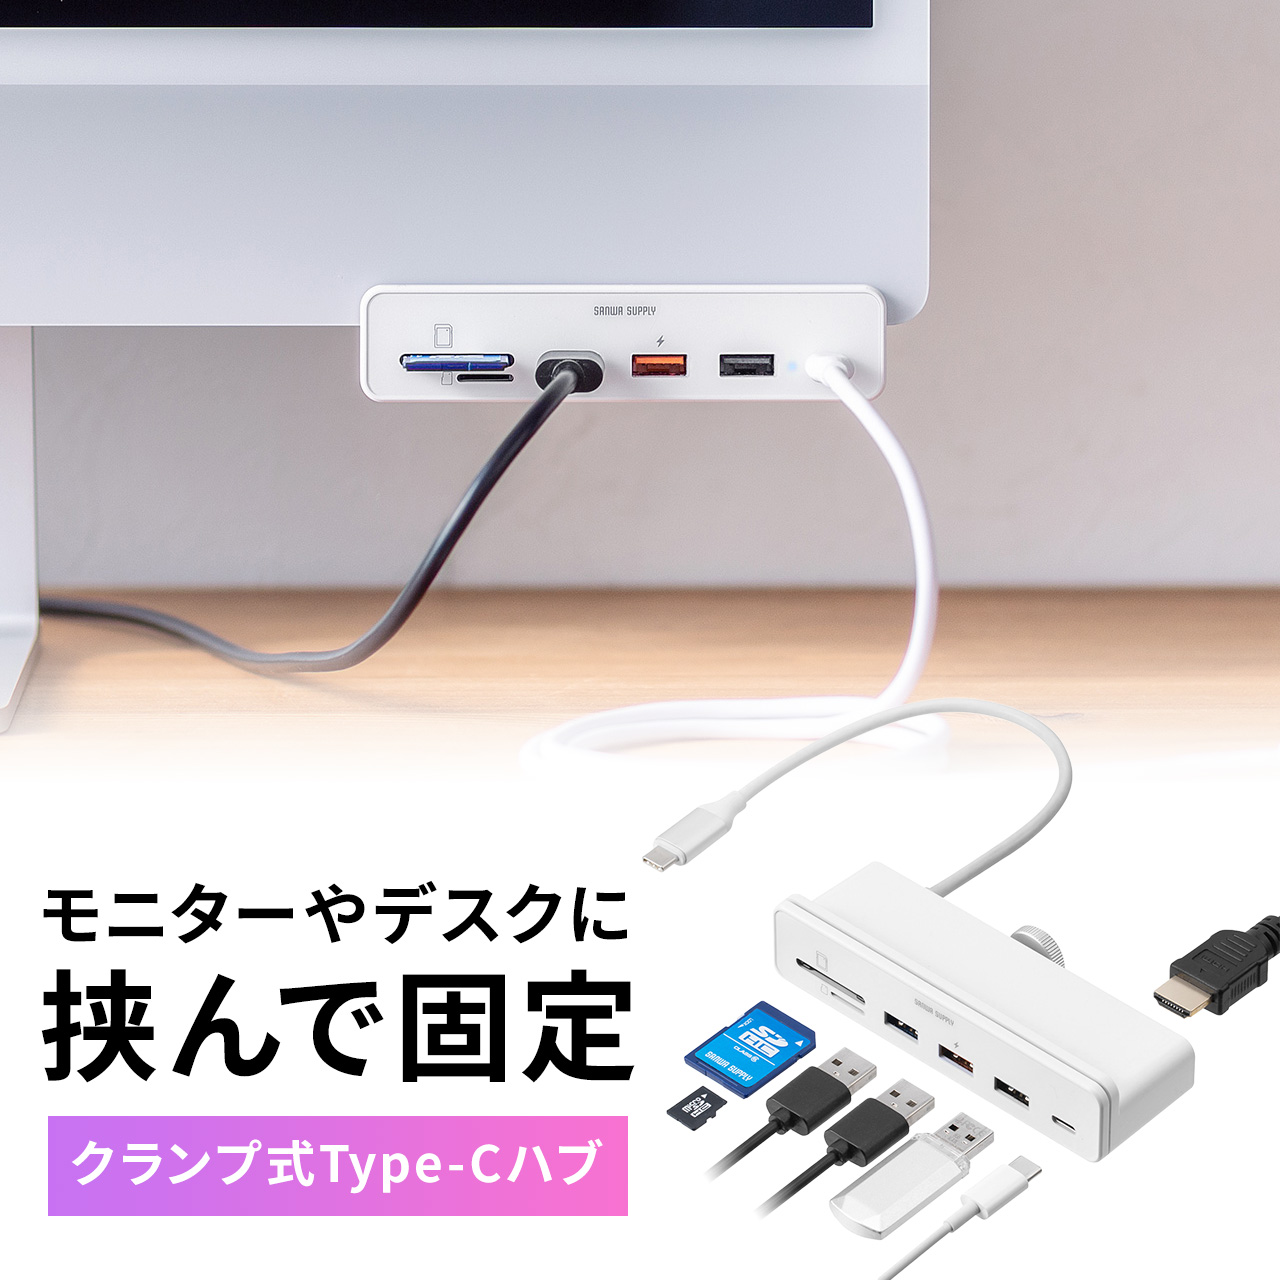 USBハブ Type-Cハブ クランプ式 固定 USB A カードリーダー SD microSD HDMI ドッキングステーション ドッキングハブ 400-ADR330W